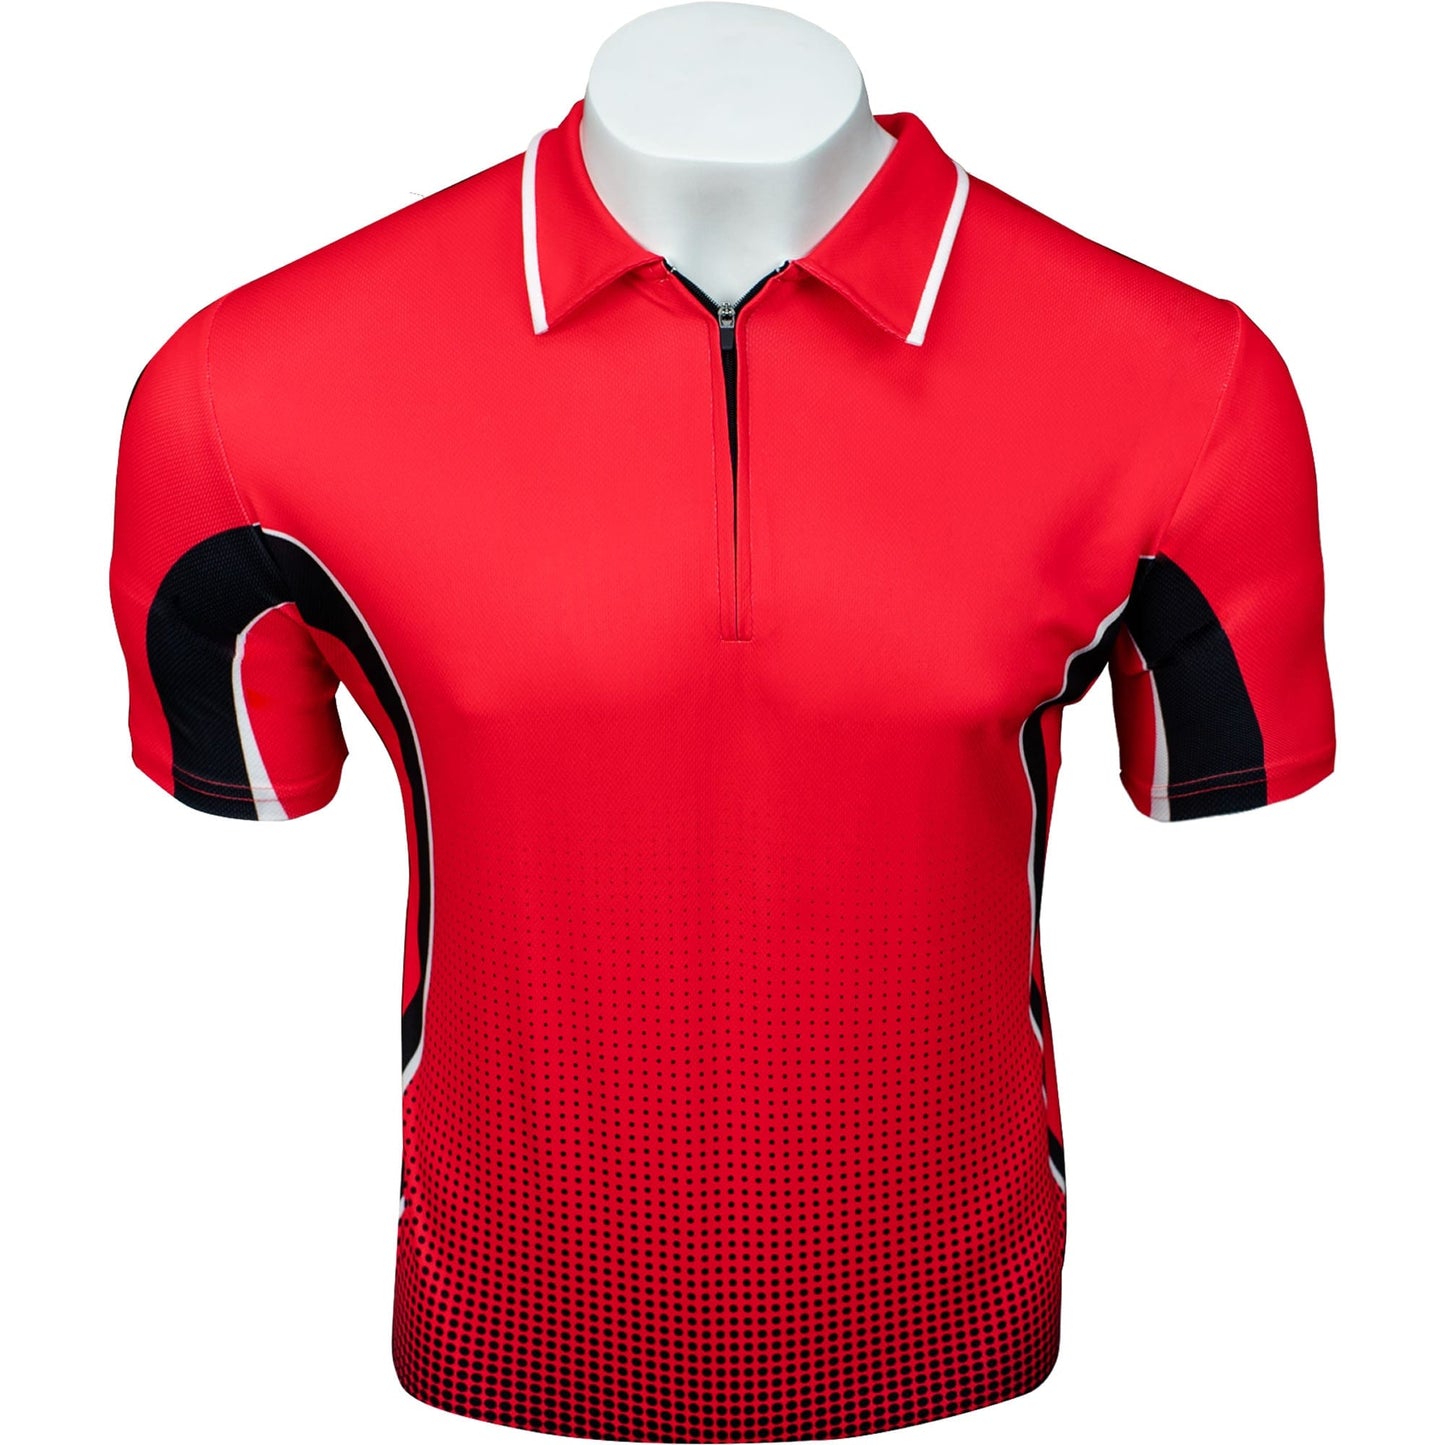 Legend Darts - Mensur Suljovic - Dart Shirt - Red